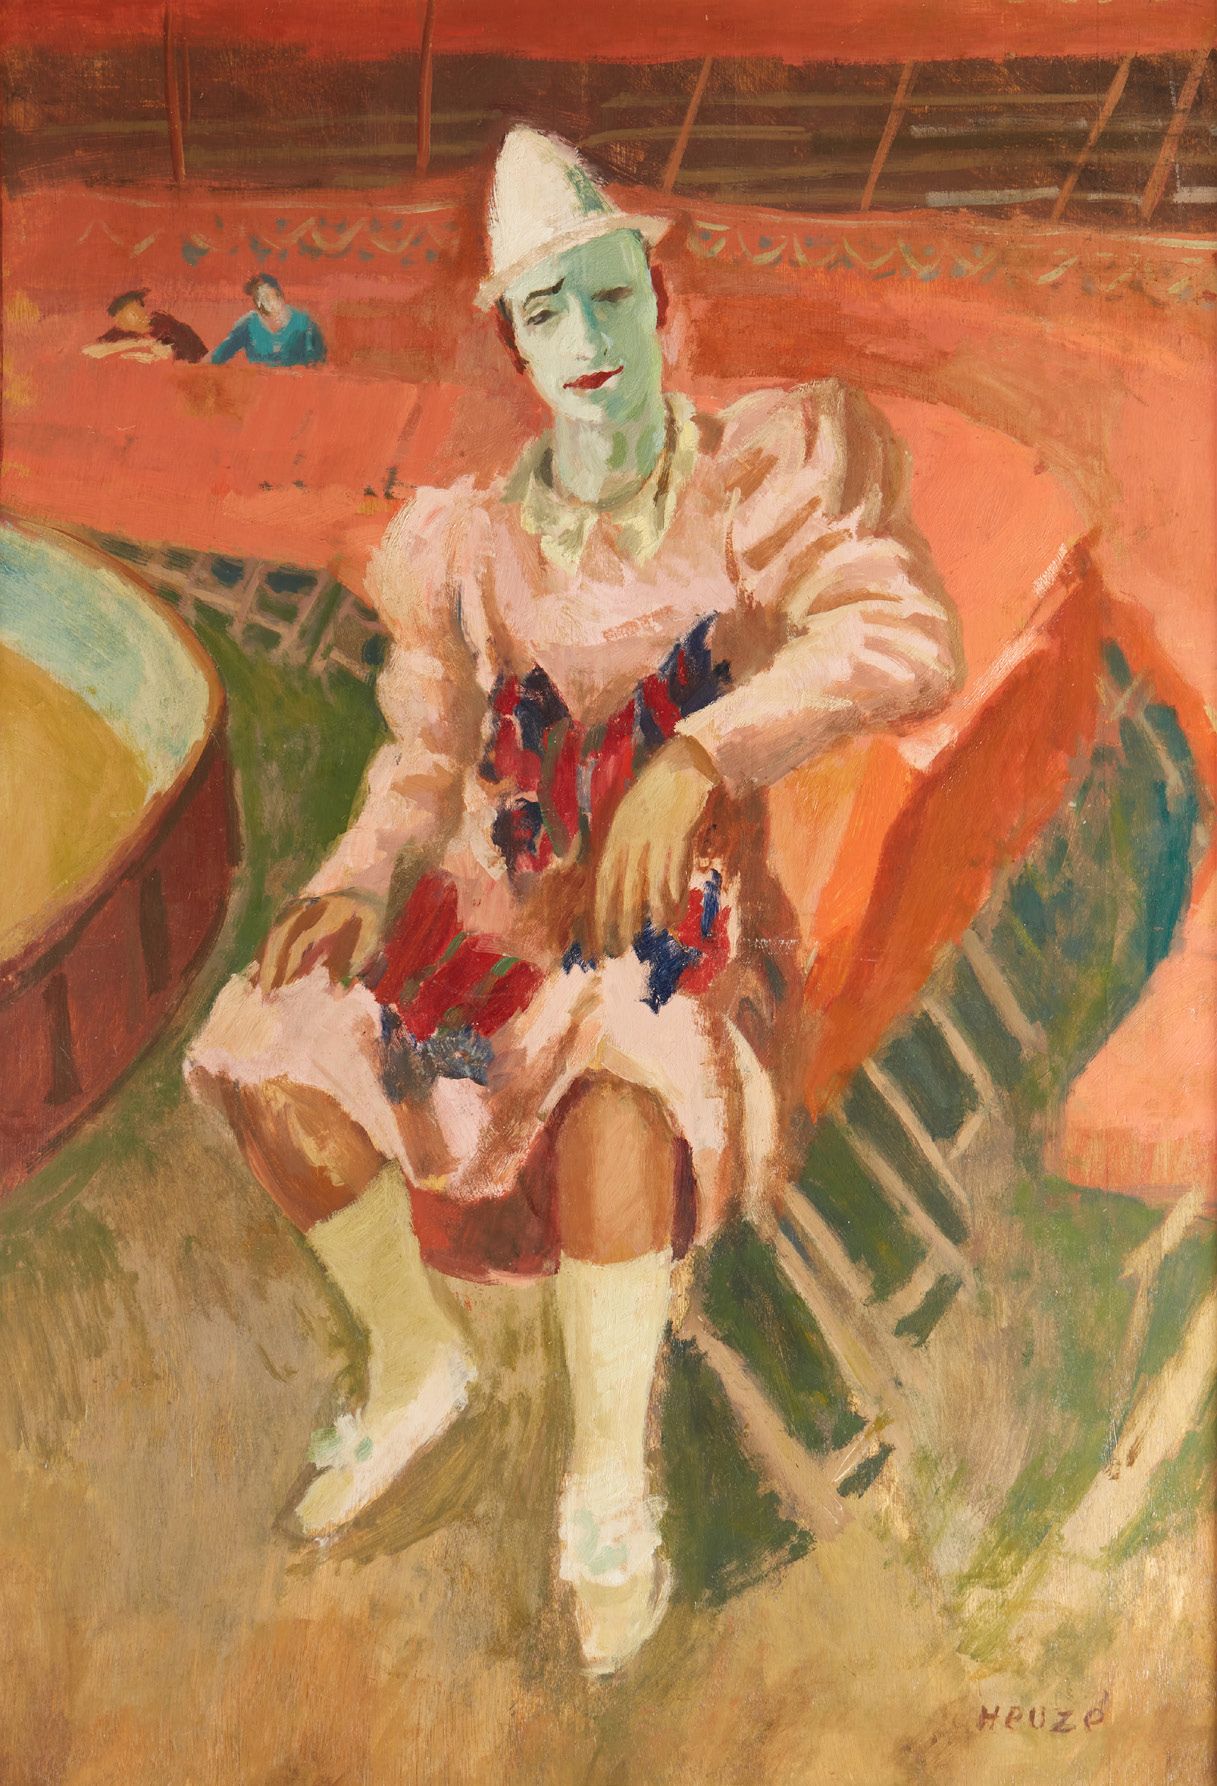 Edmond Amédée HEUZÉ (1884-1967) Sitzender Clown
Öl auf Leinwand
108 x 77 cm